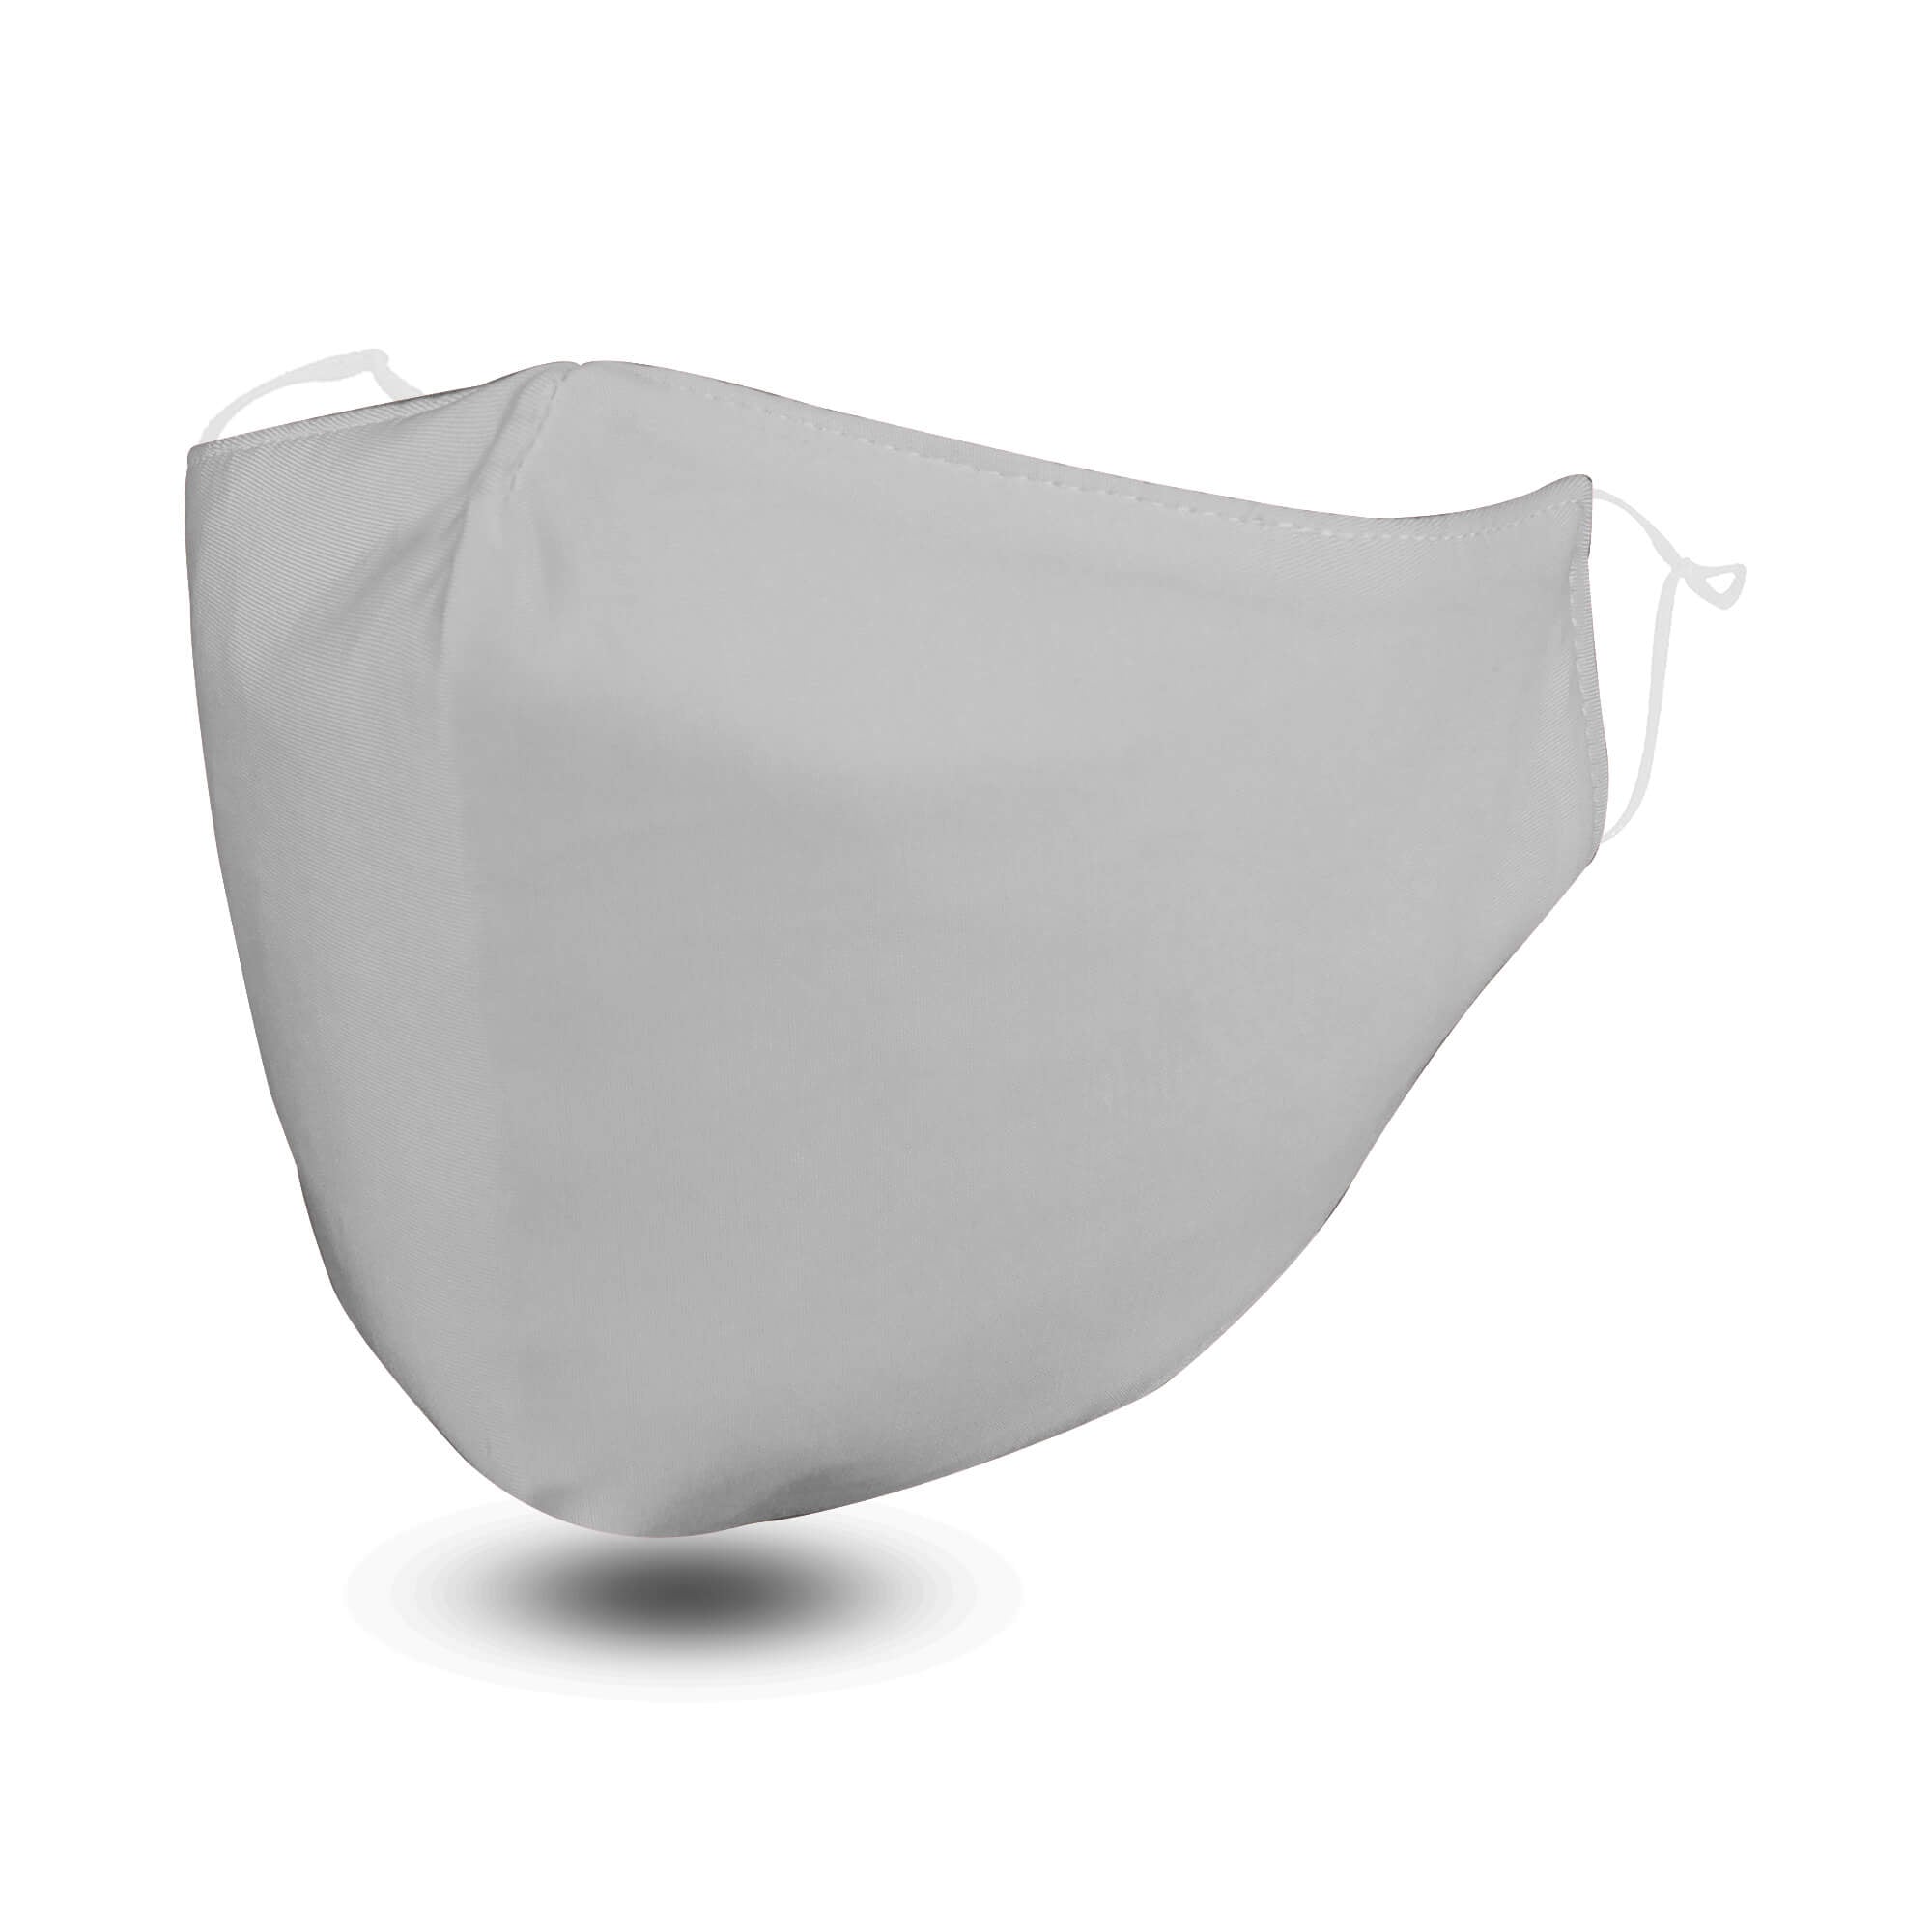 Grey FLOWZOOM Face Mask with Filter Pocket - Soft & Adjustable